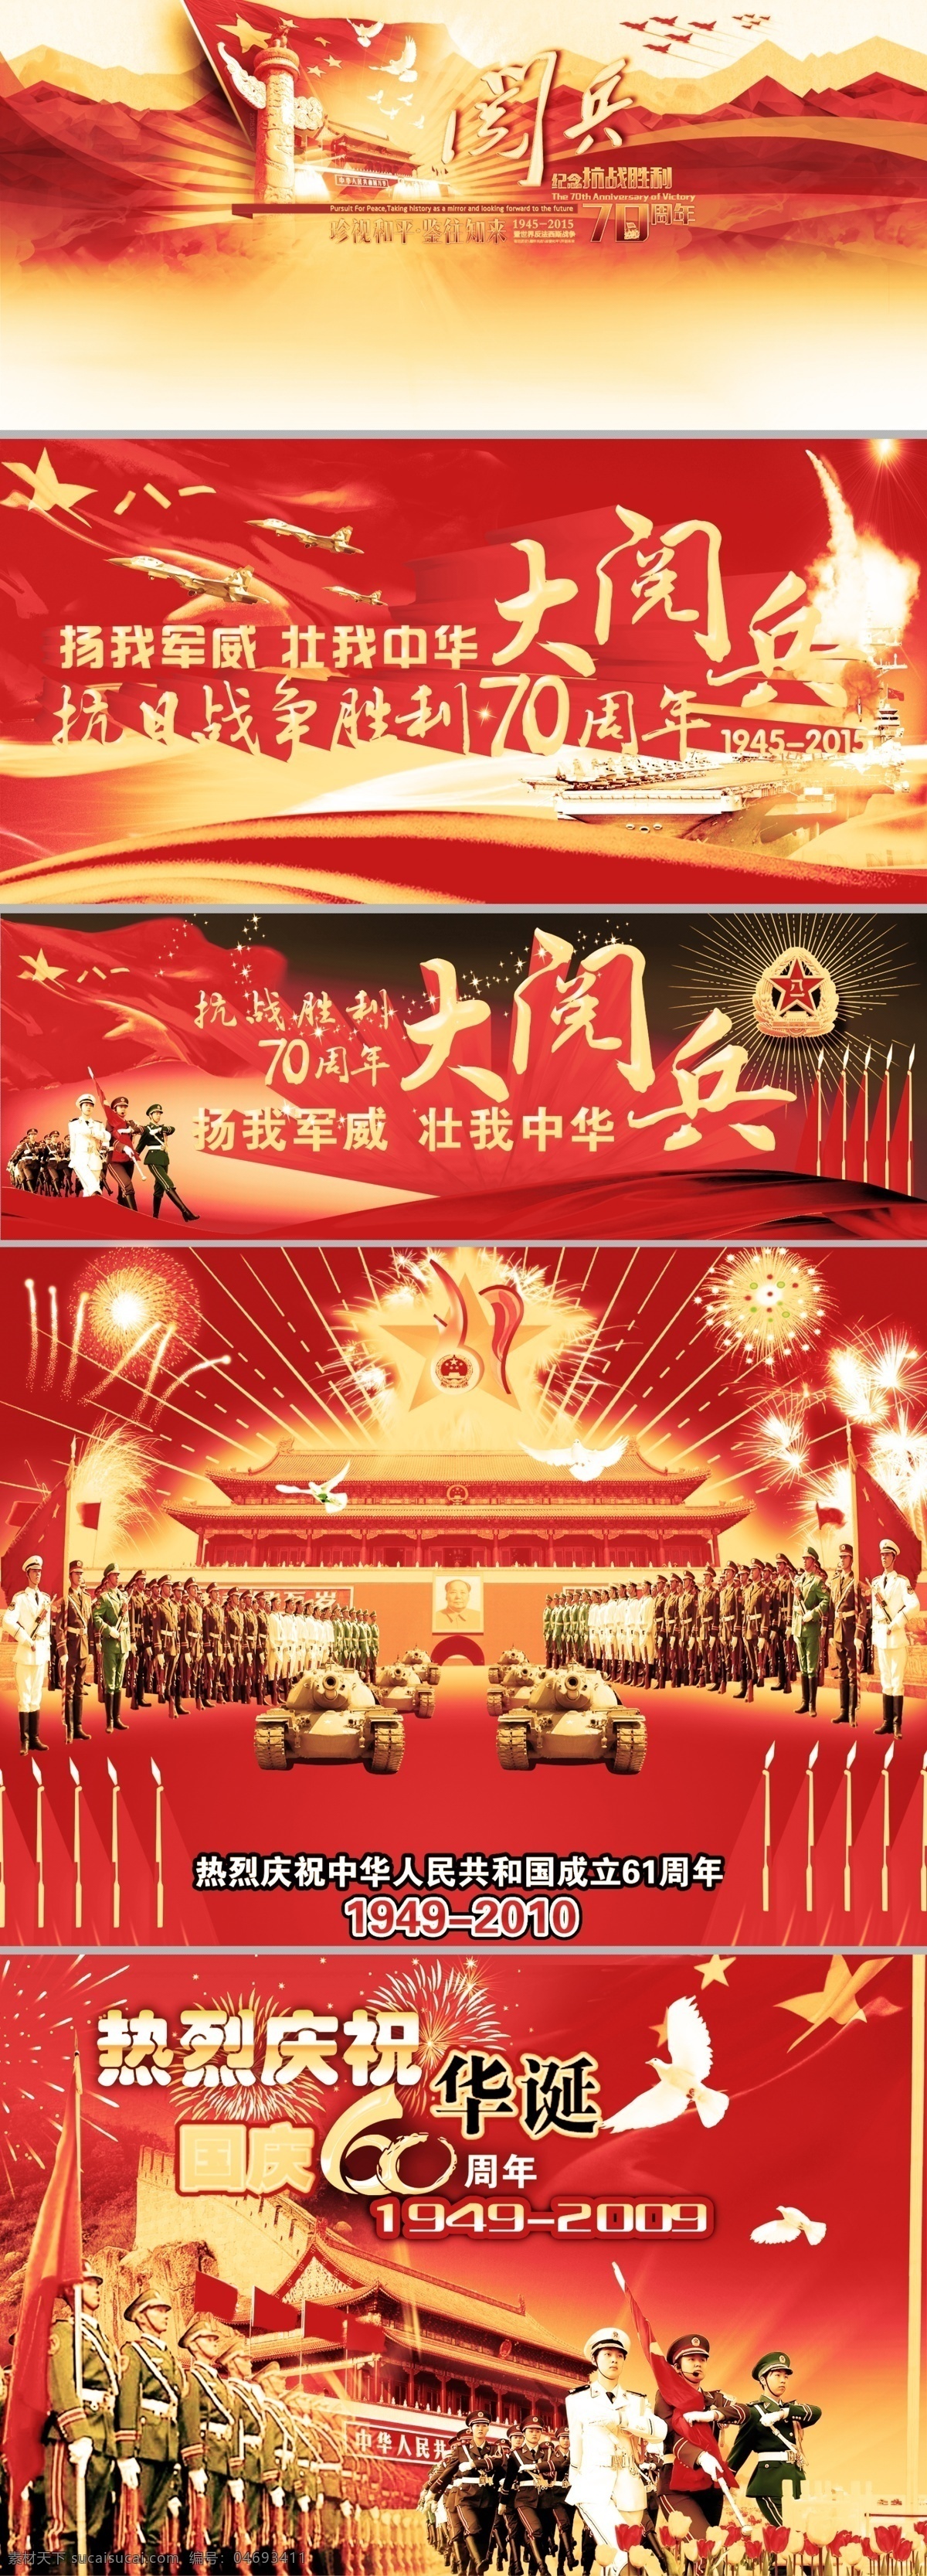 阅兵 大阅兵 红色背景 背景素材 海报 抗战胜利 平面 分层